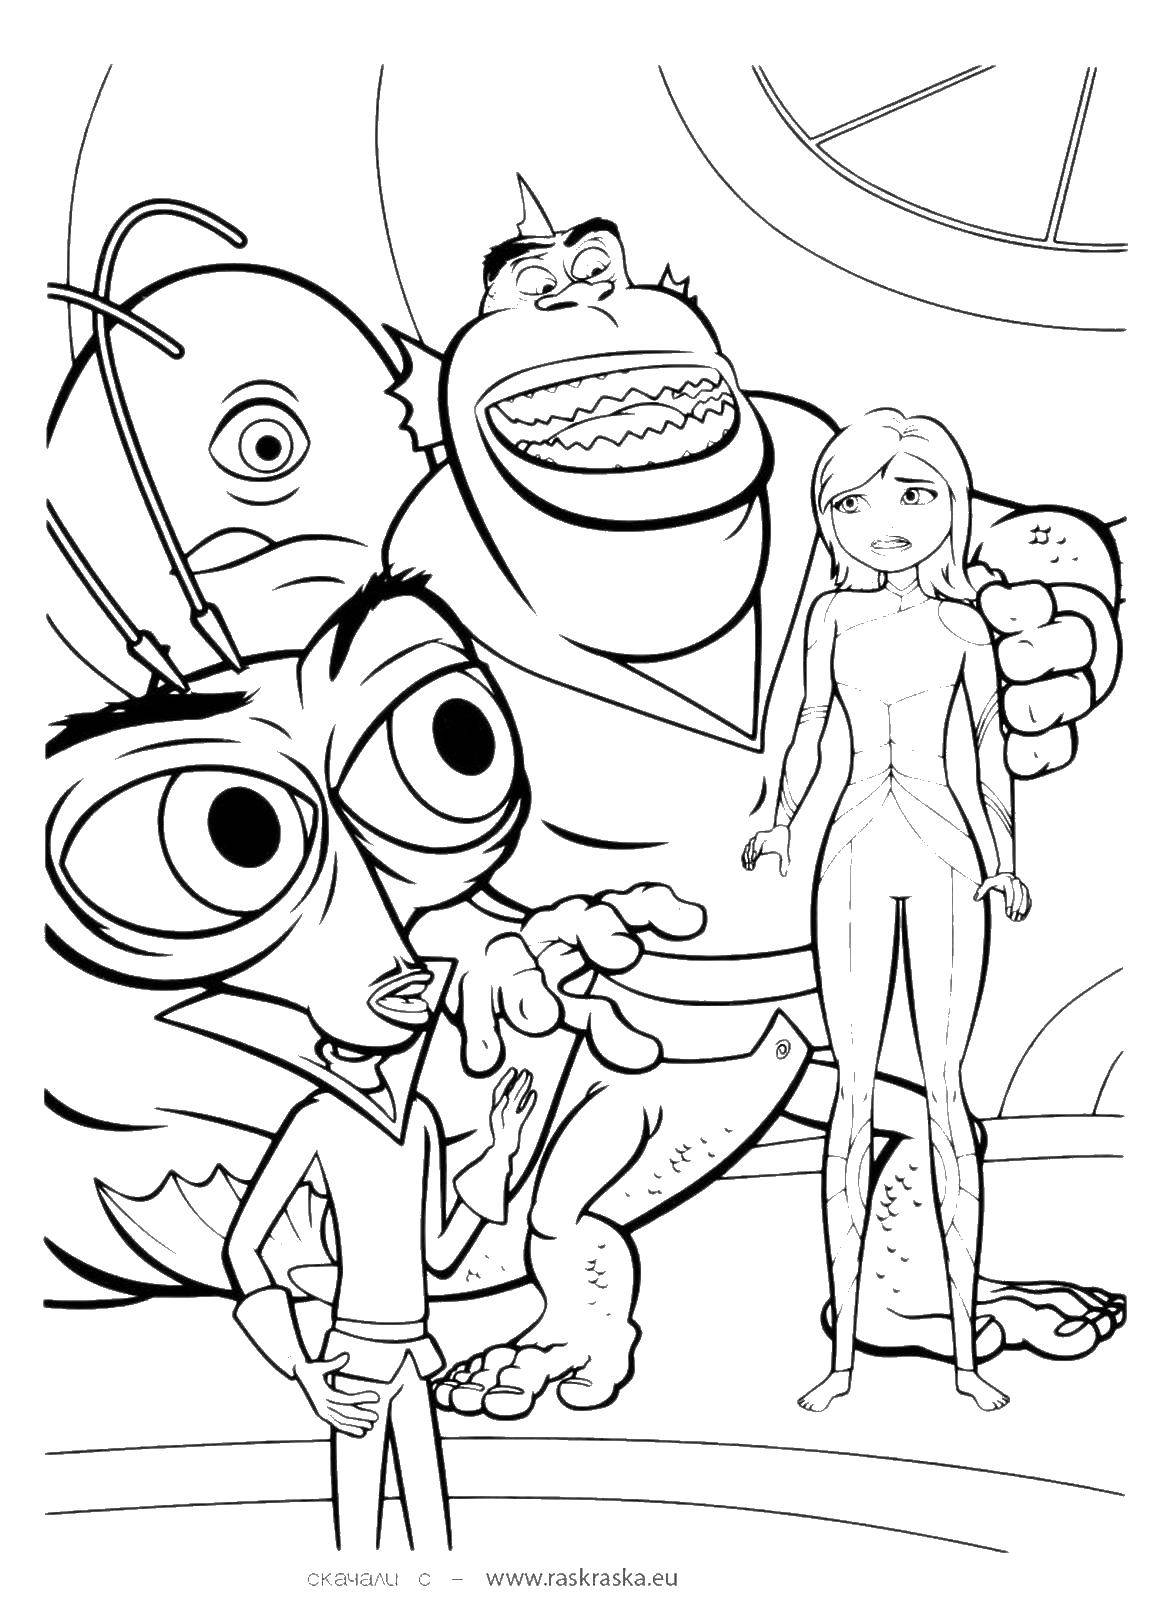 Раскраска монстра из мультфильма Монстры против пришельцев (монстры)